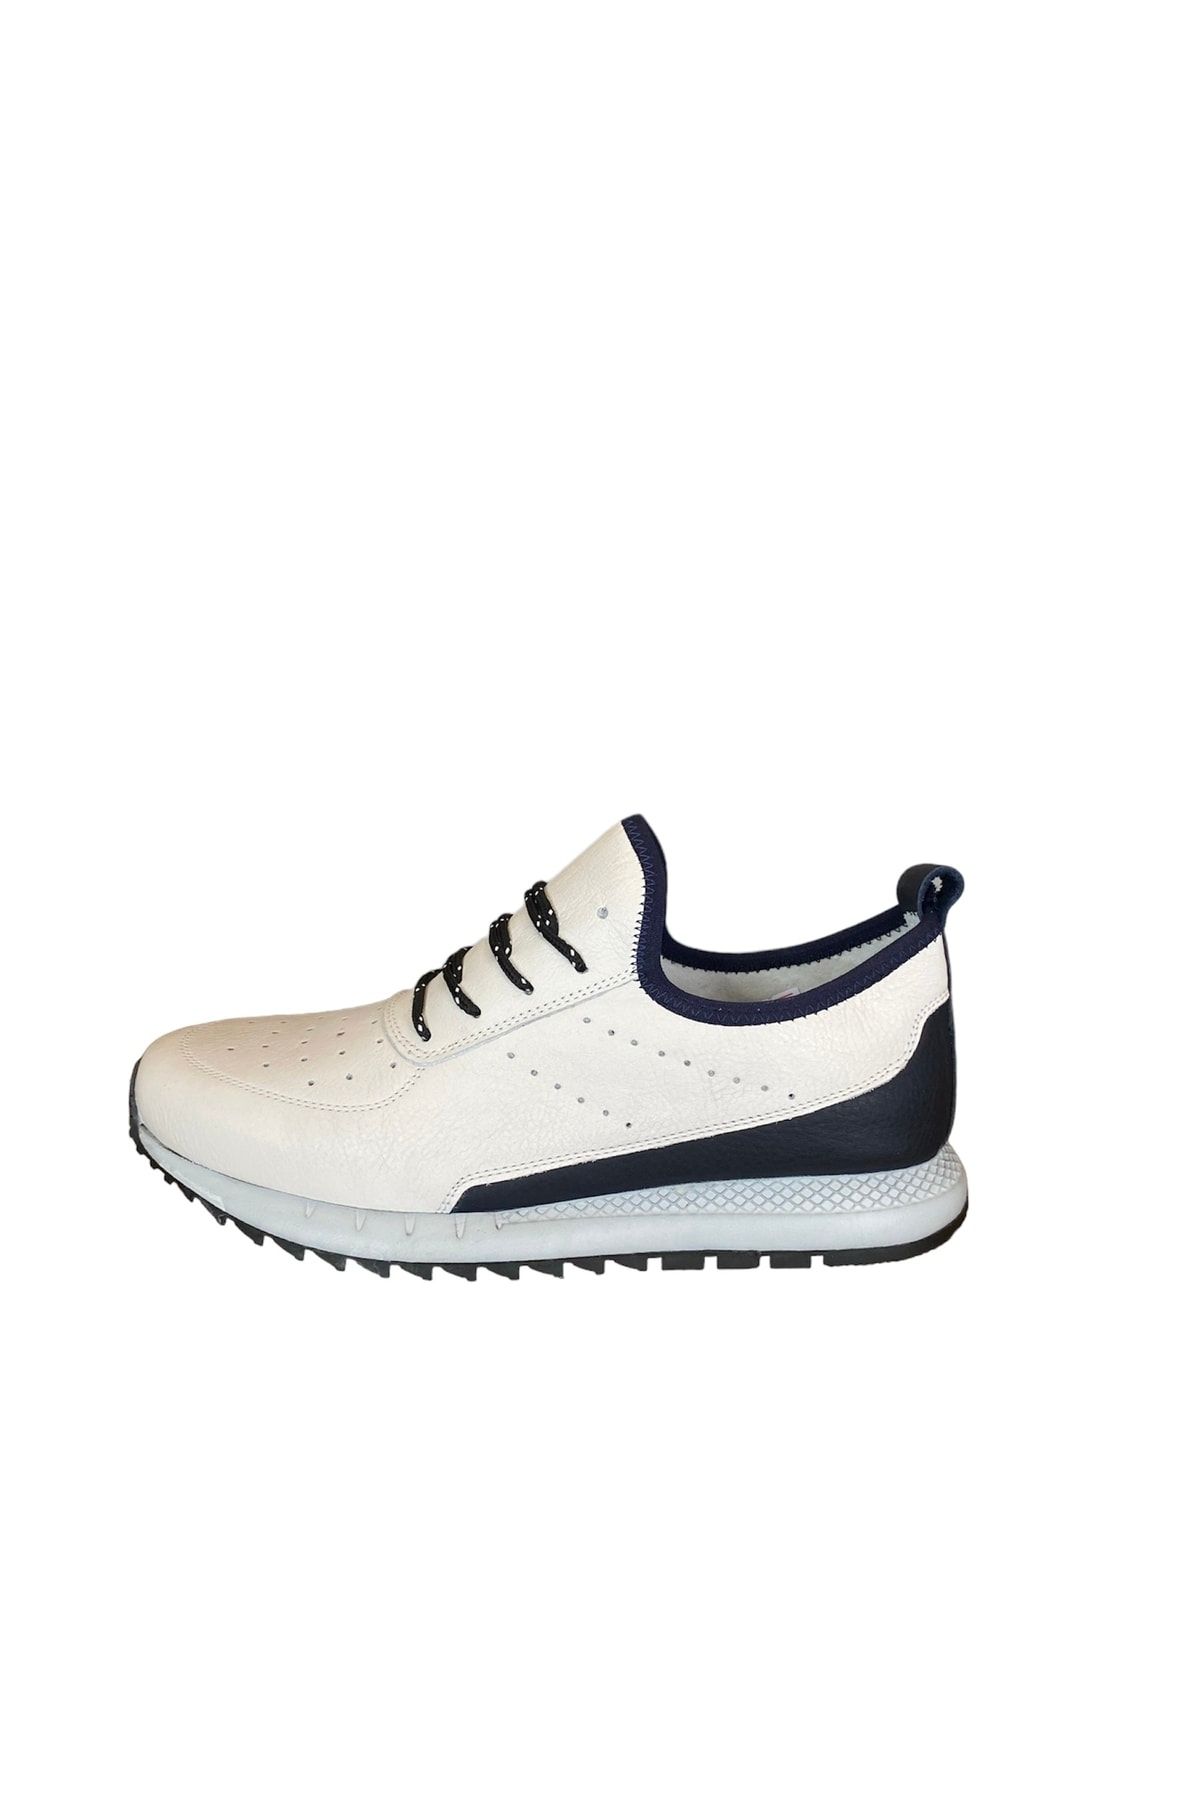 JAMES FRANCO M6712 Hakiki Deri Ortapedik Tabanlı Beyaz Günlük Spor Ayakkabı Sneaker